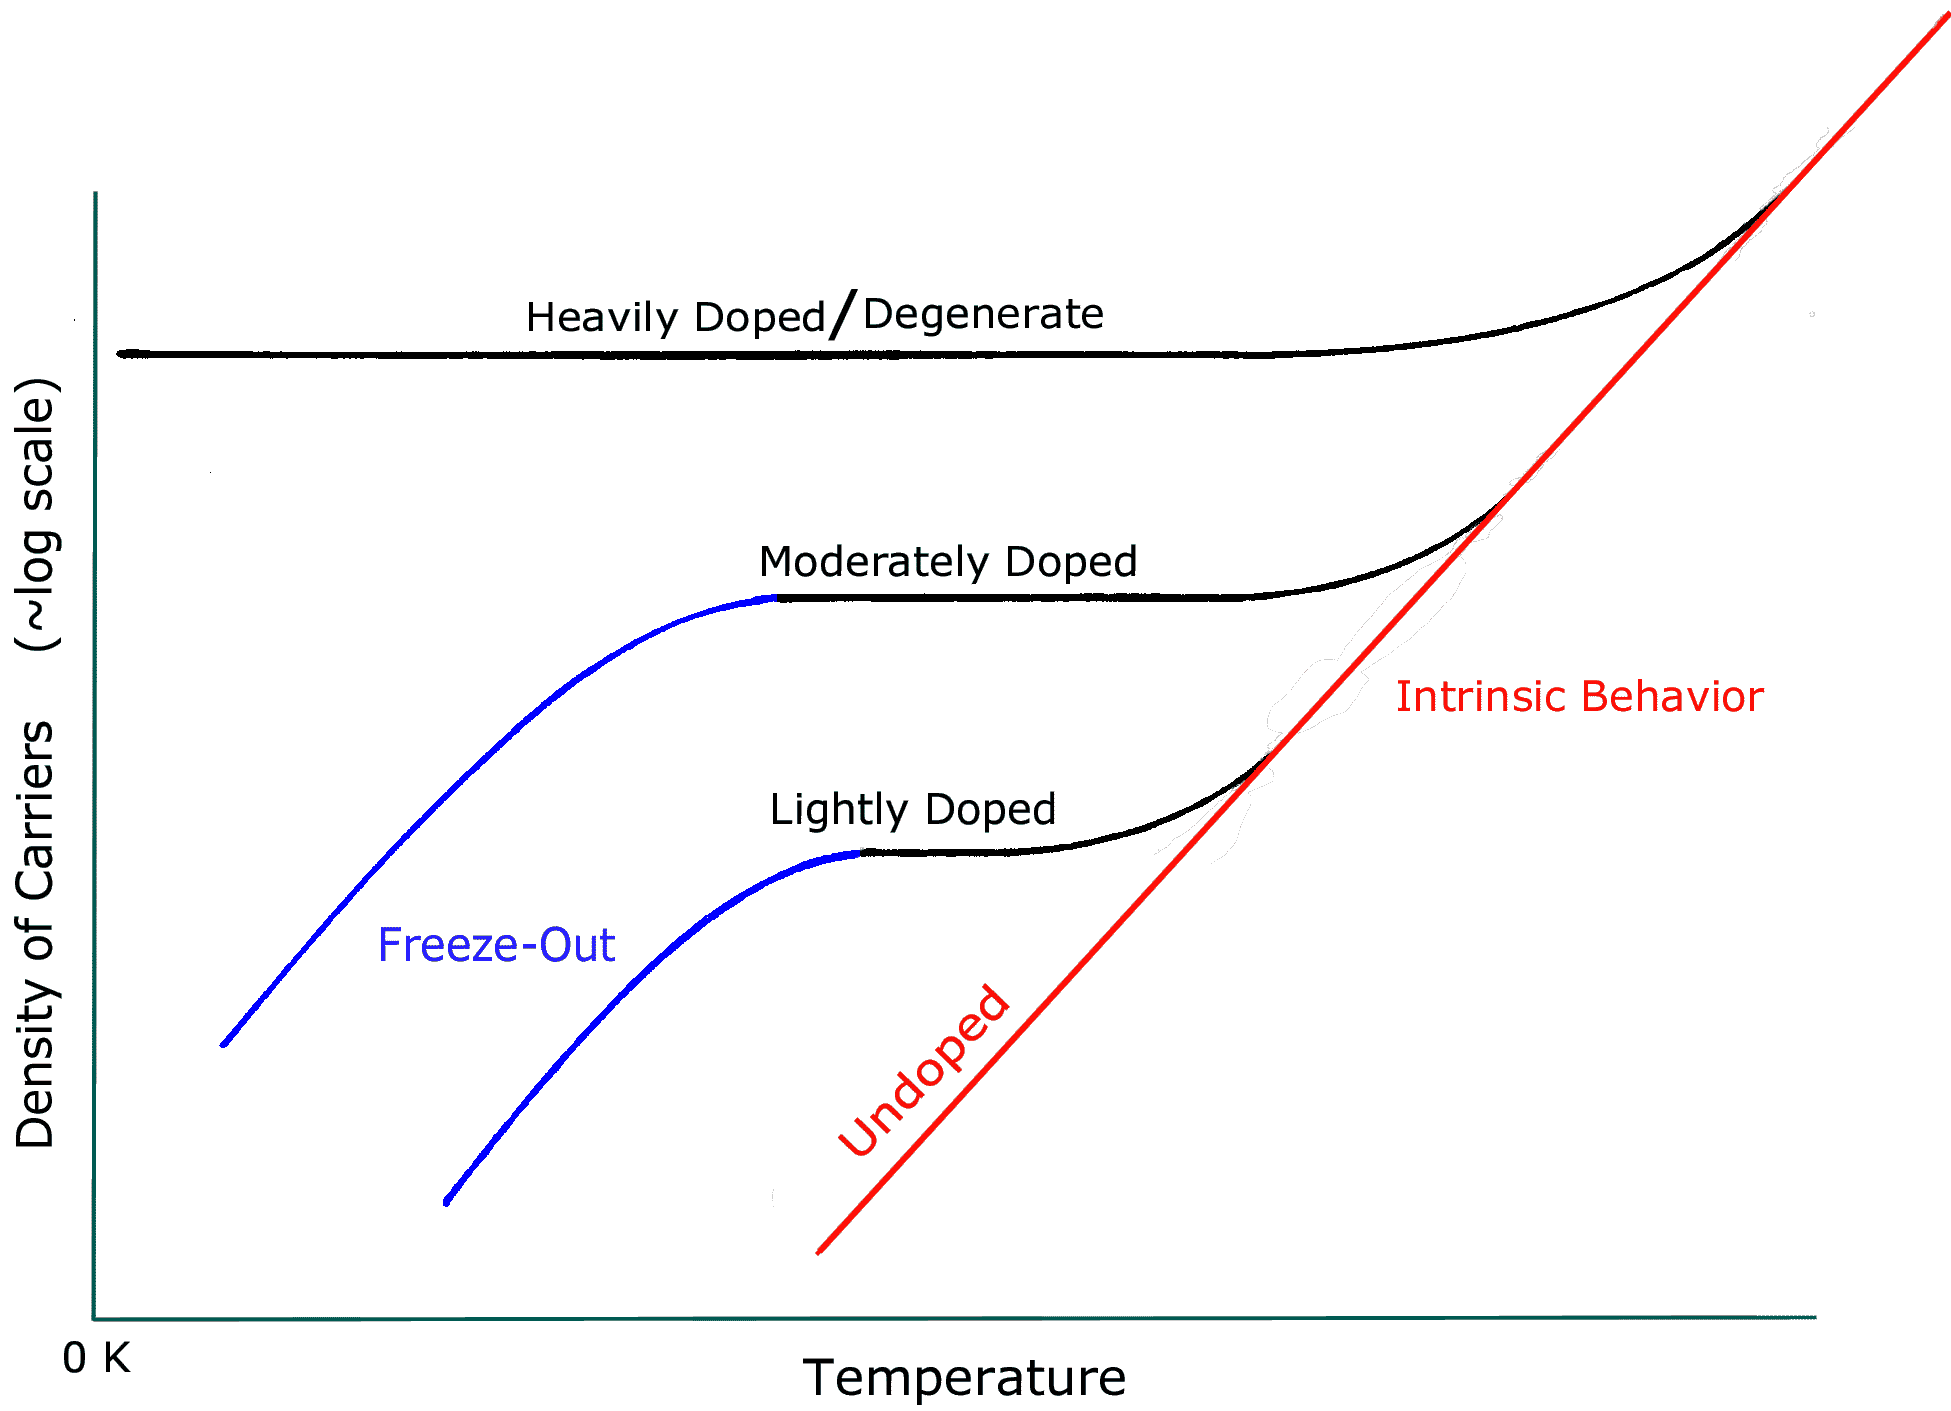 Density of carriers versus temp